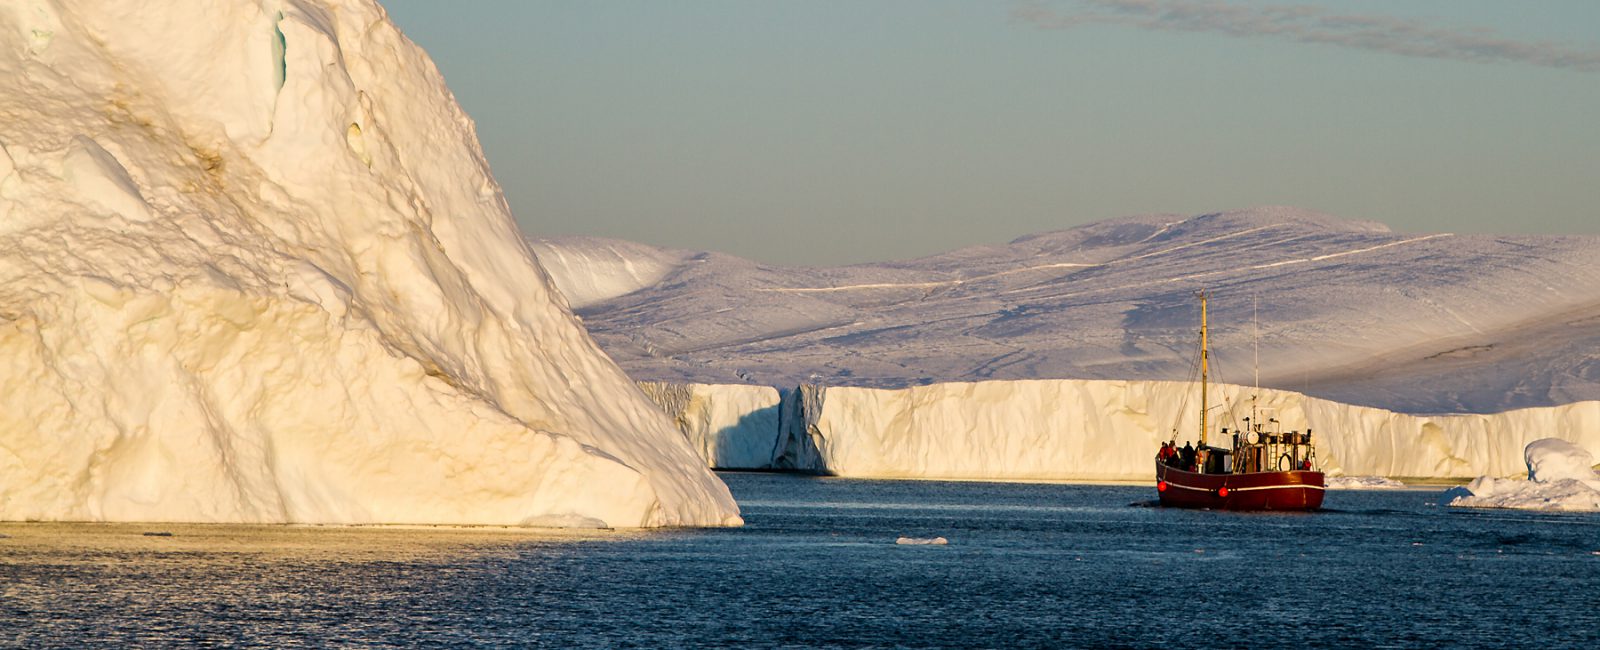 Boot vor riesigen Eisbergen in der Abendsonne